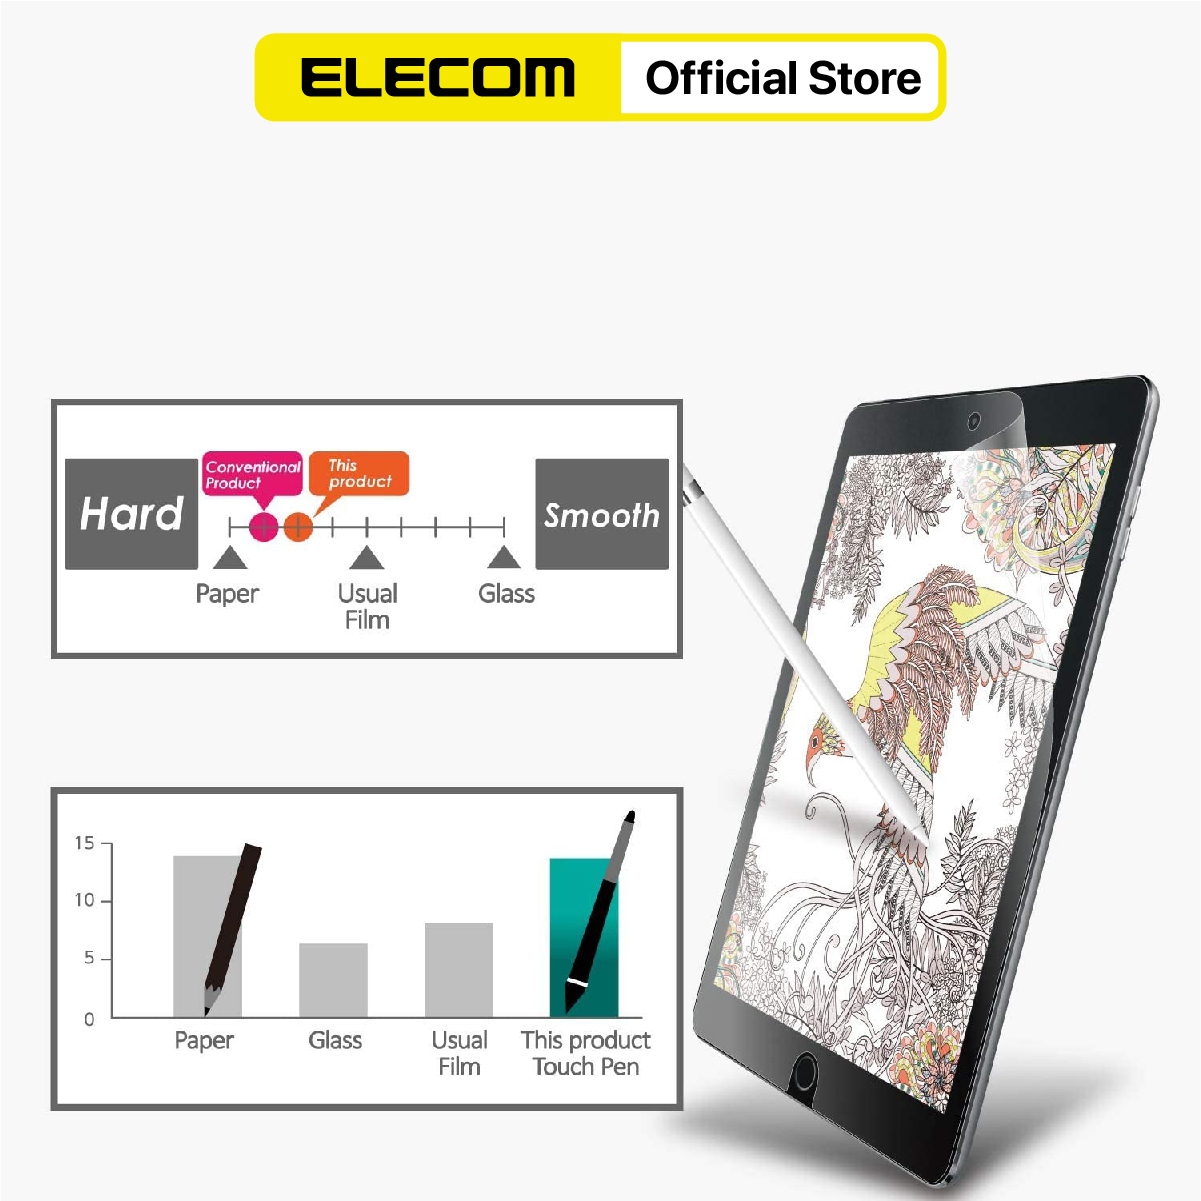 Miếng dán màn hình iPad mini 2019 ELECOM Paper- Feel TB-A19PS079 bề mặt trơn bóng - Hàng chính hãng